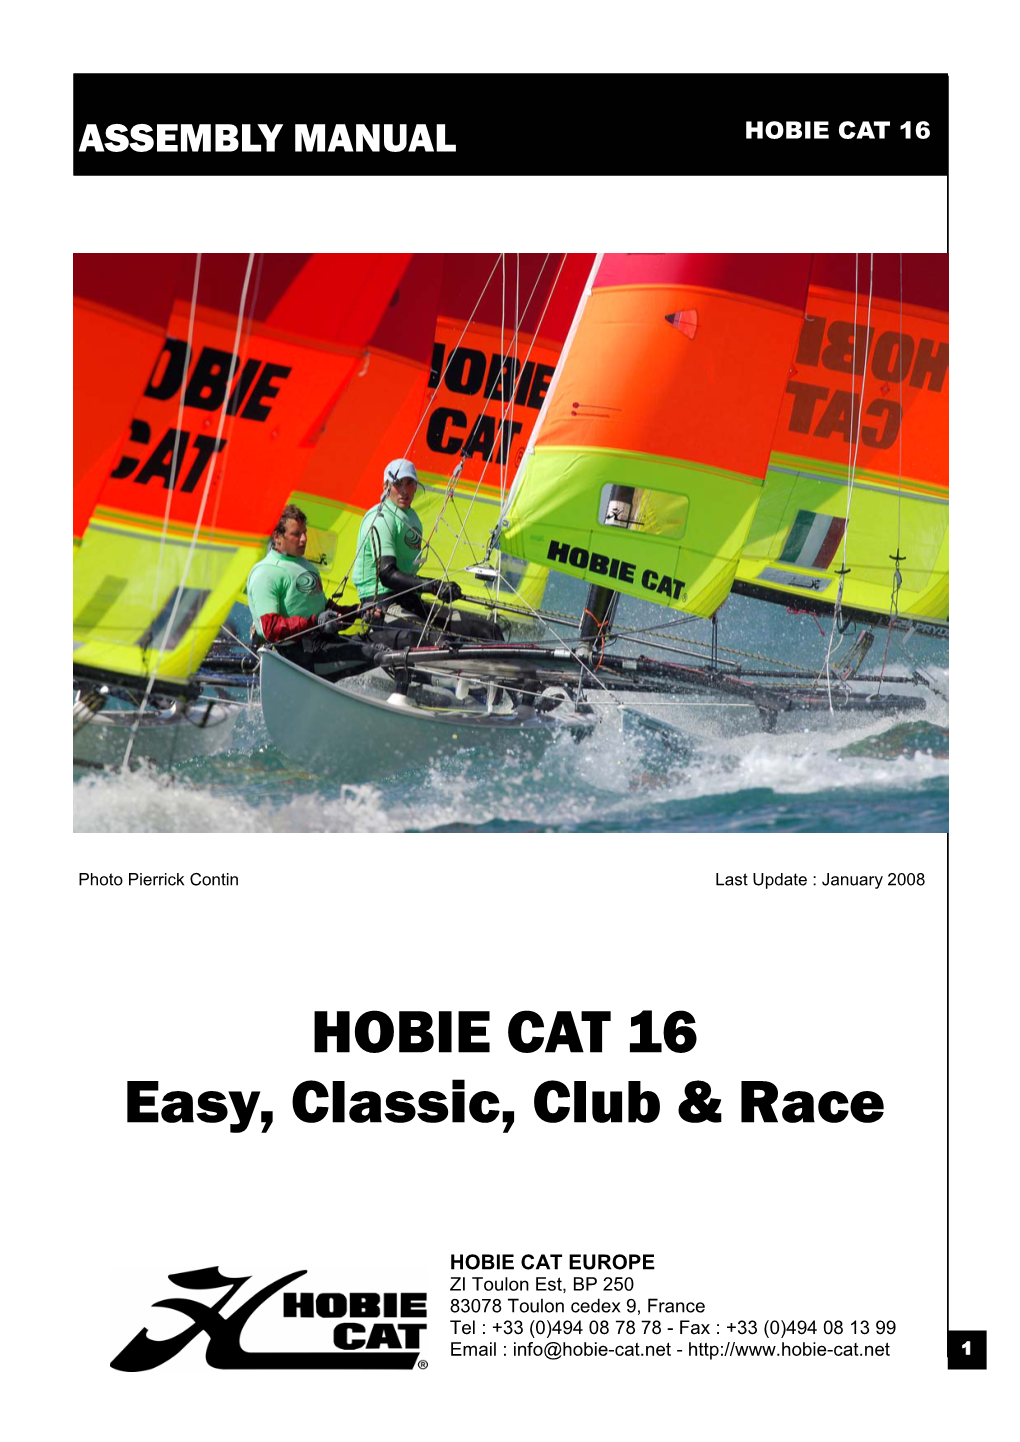 HOBIE CAT 16 Easy, Classic, Club & Race